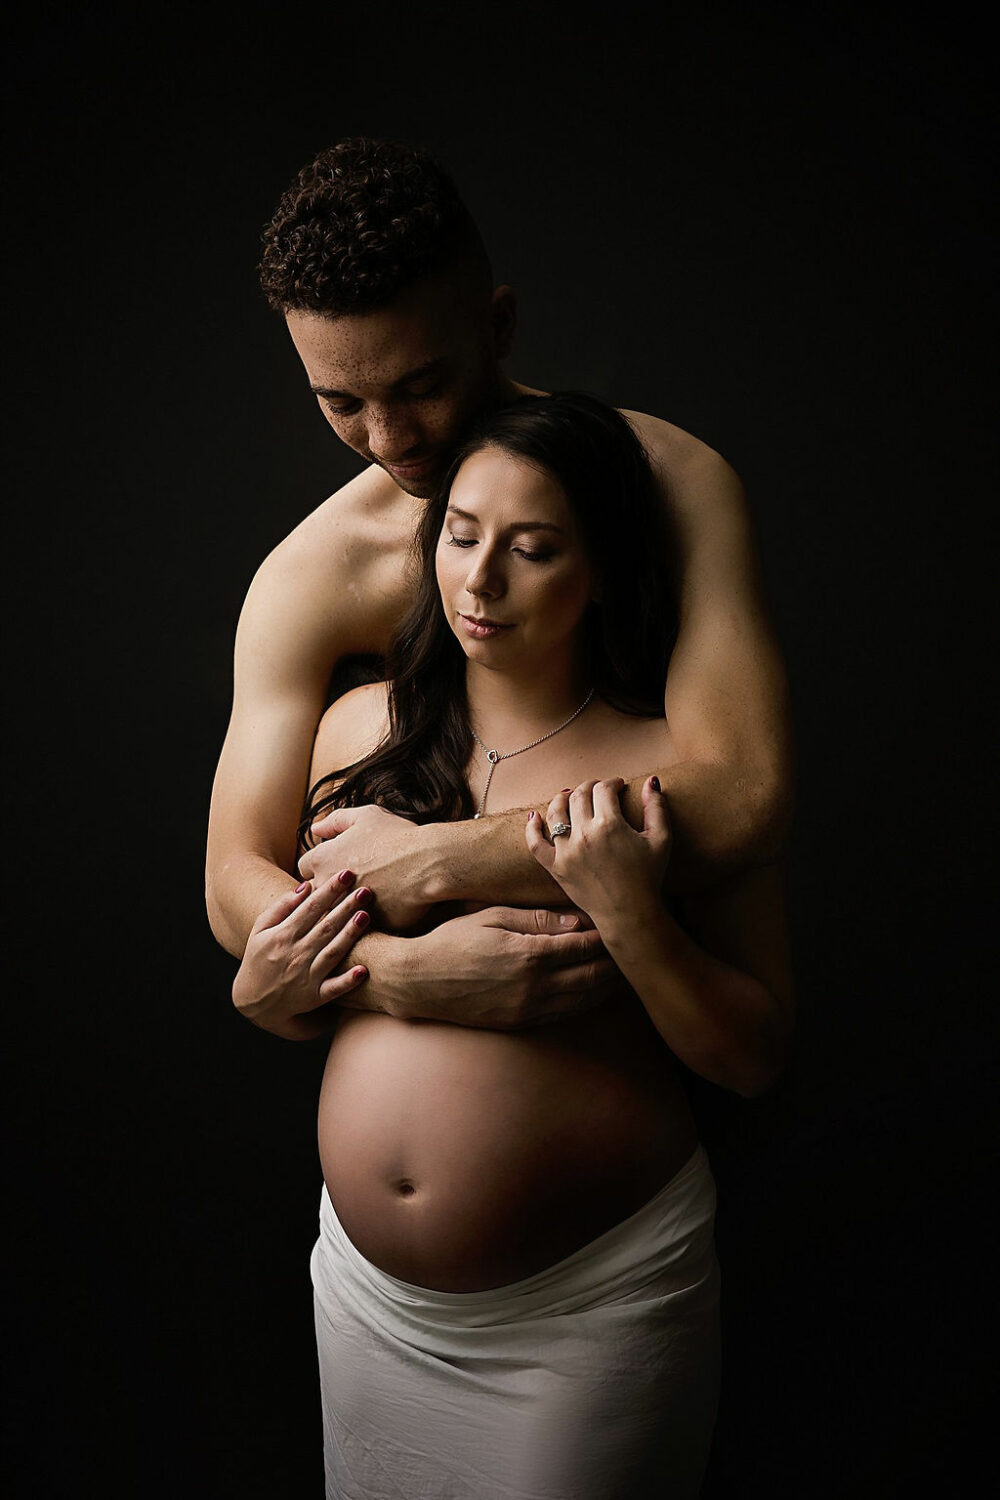 allan buenaventura share pregnant girlfriend pics photos